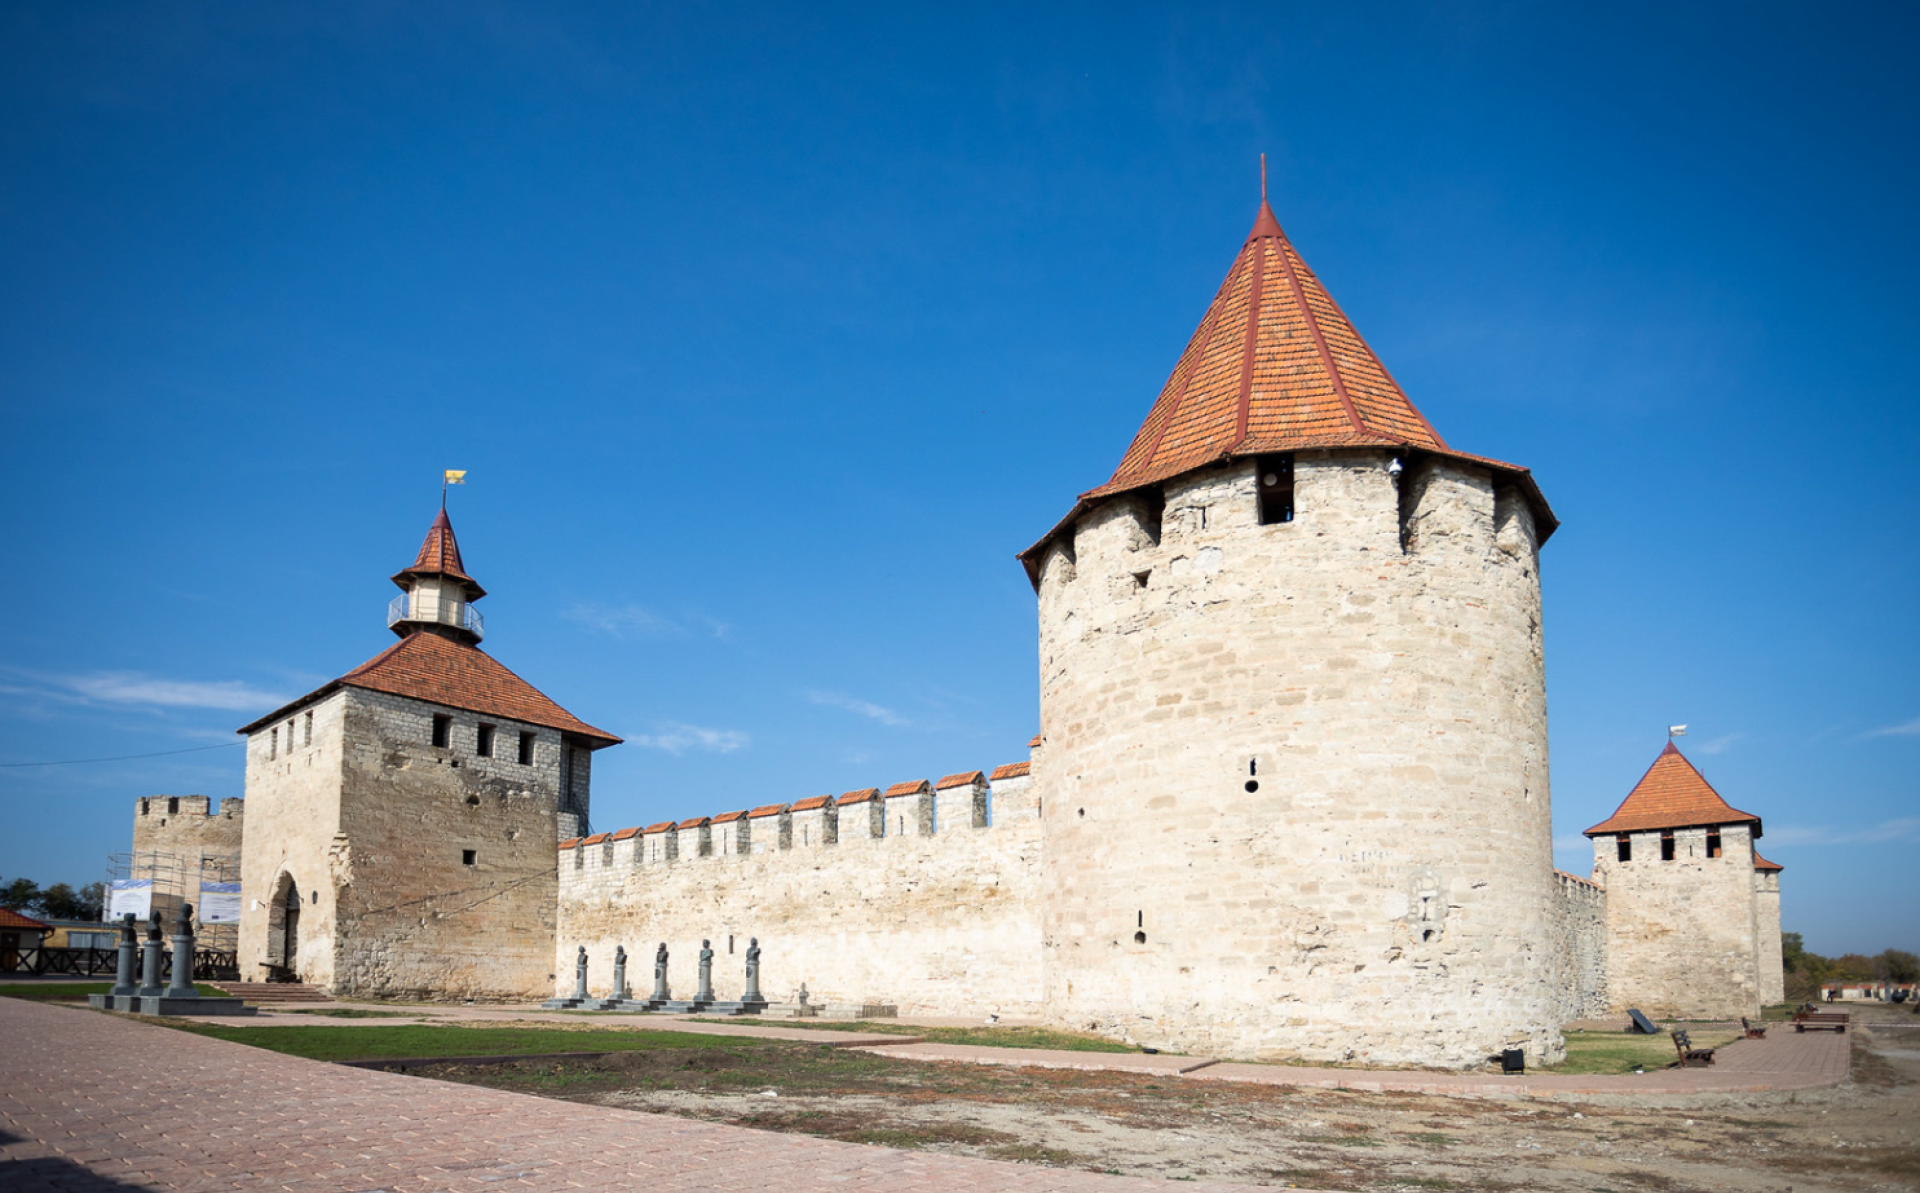 Молдова: ЕС выделит более 1,4 млн евро на реставрацию крепости